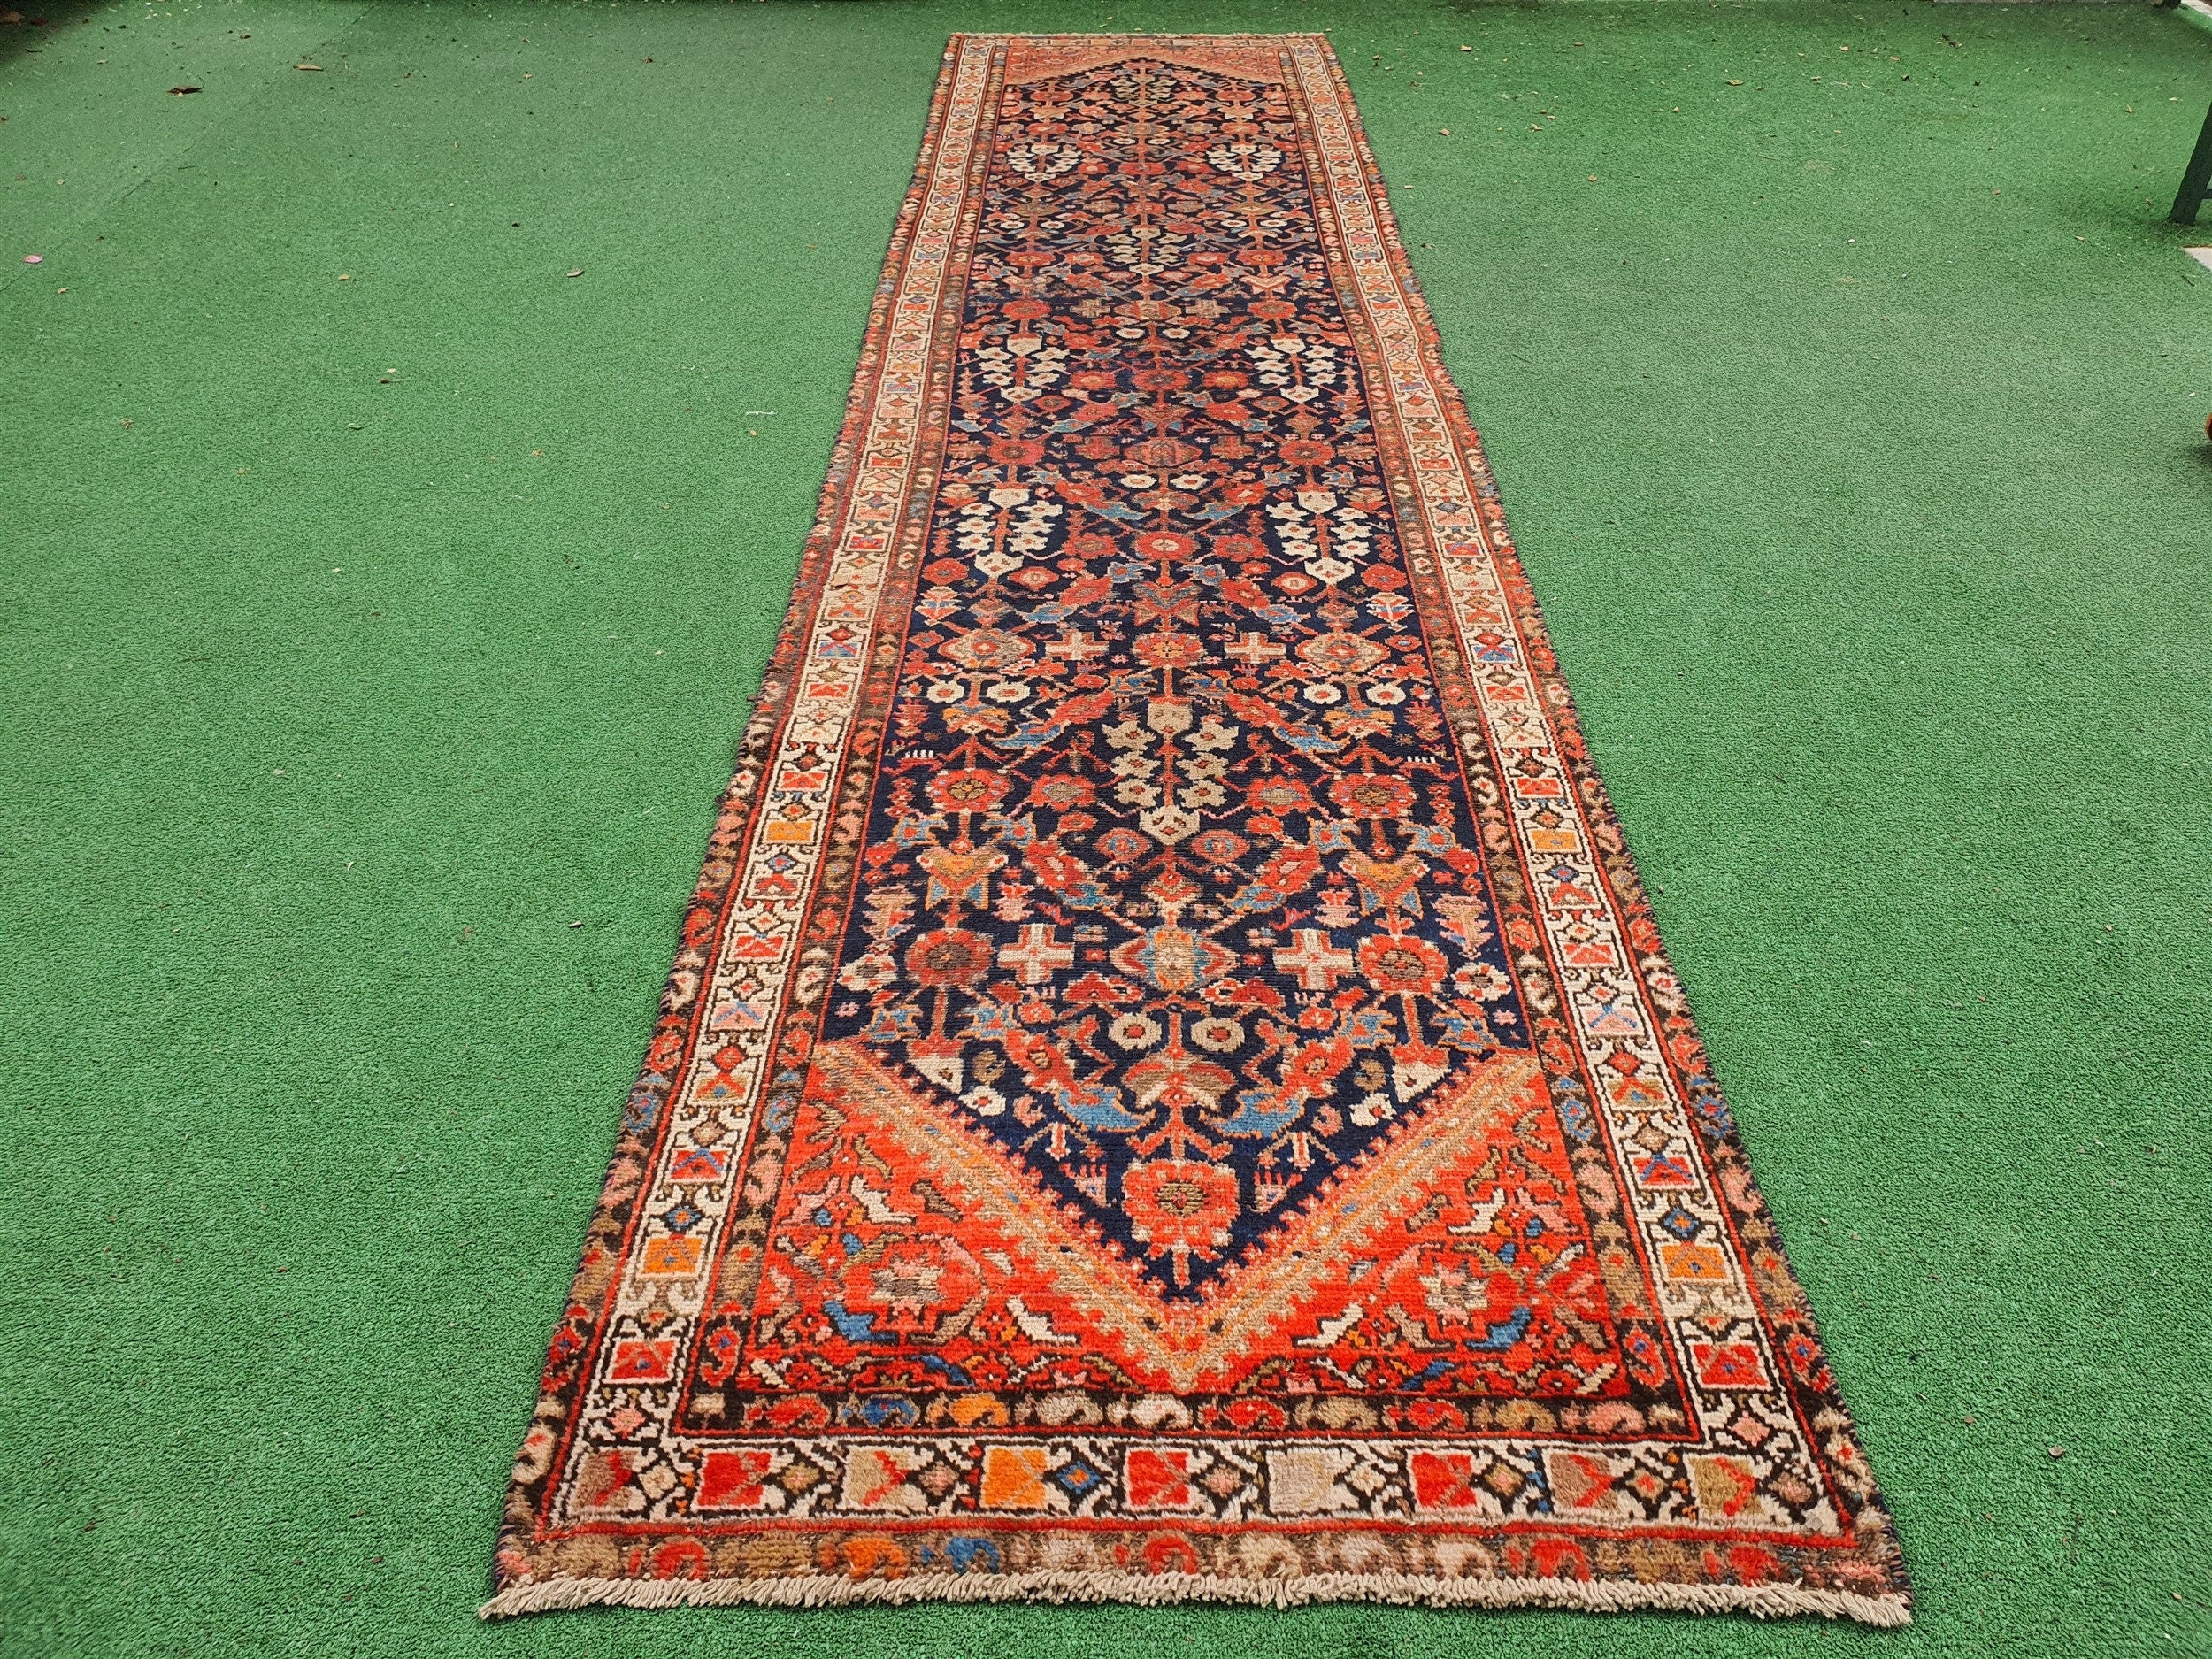 Vintage Persian Runner Rug 13 x 3 ft Blue Orange Beige Handmade Natural Wool Long Oriental Rug